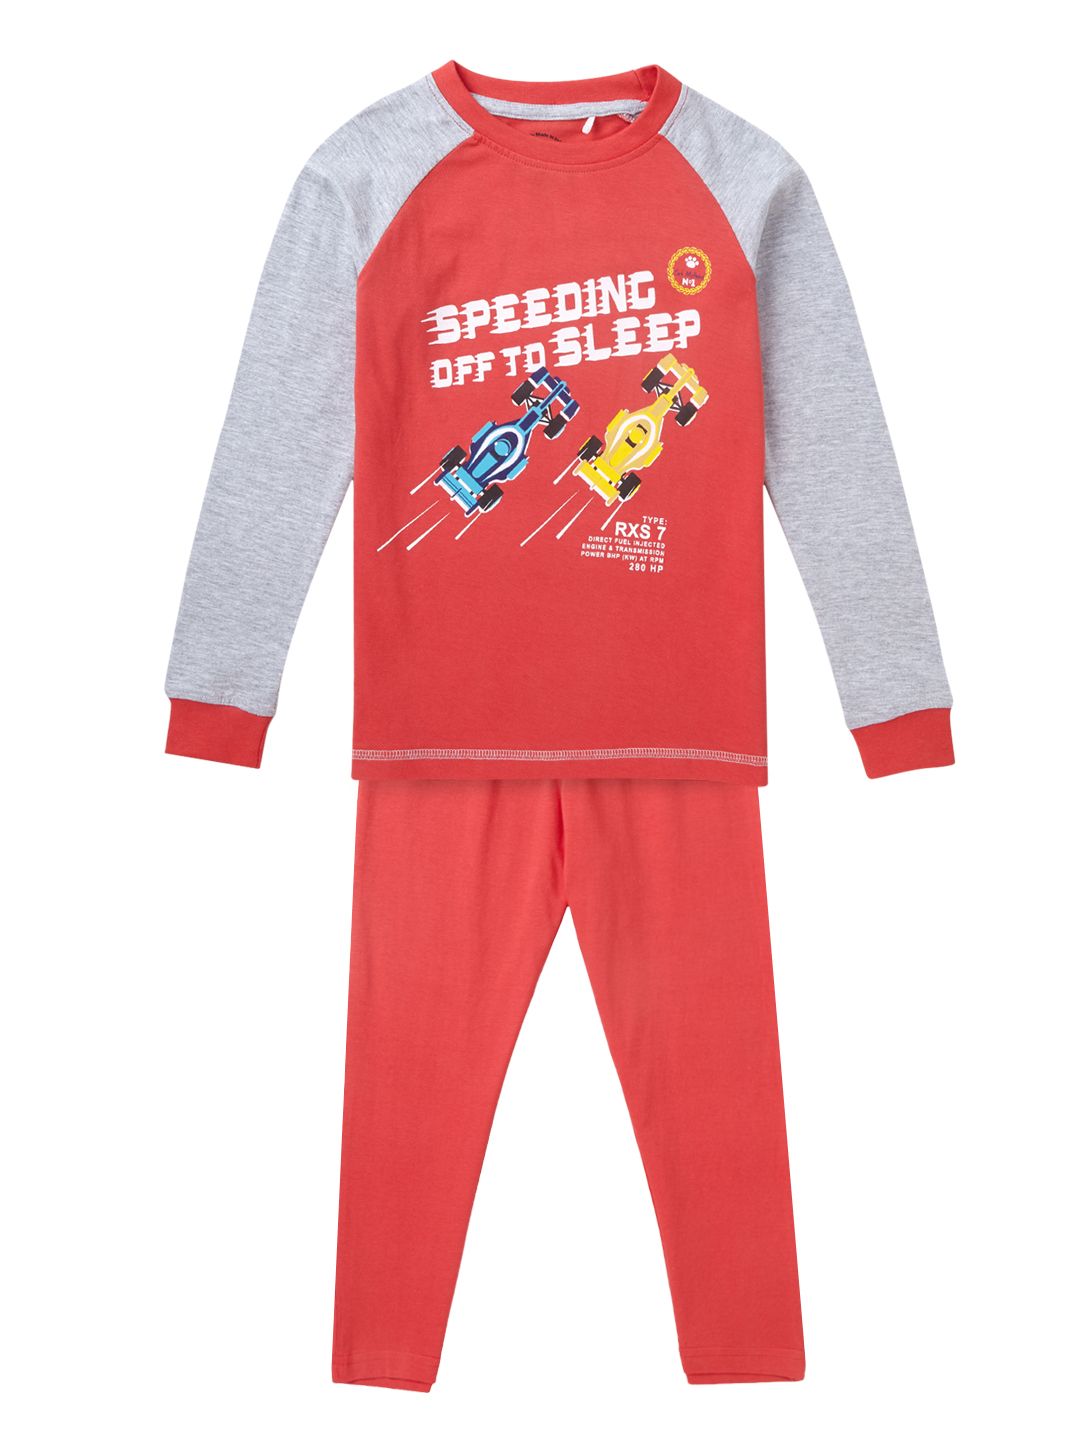 Boys Sleepwear Set - Red Raglan Sleeves